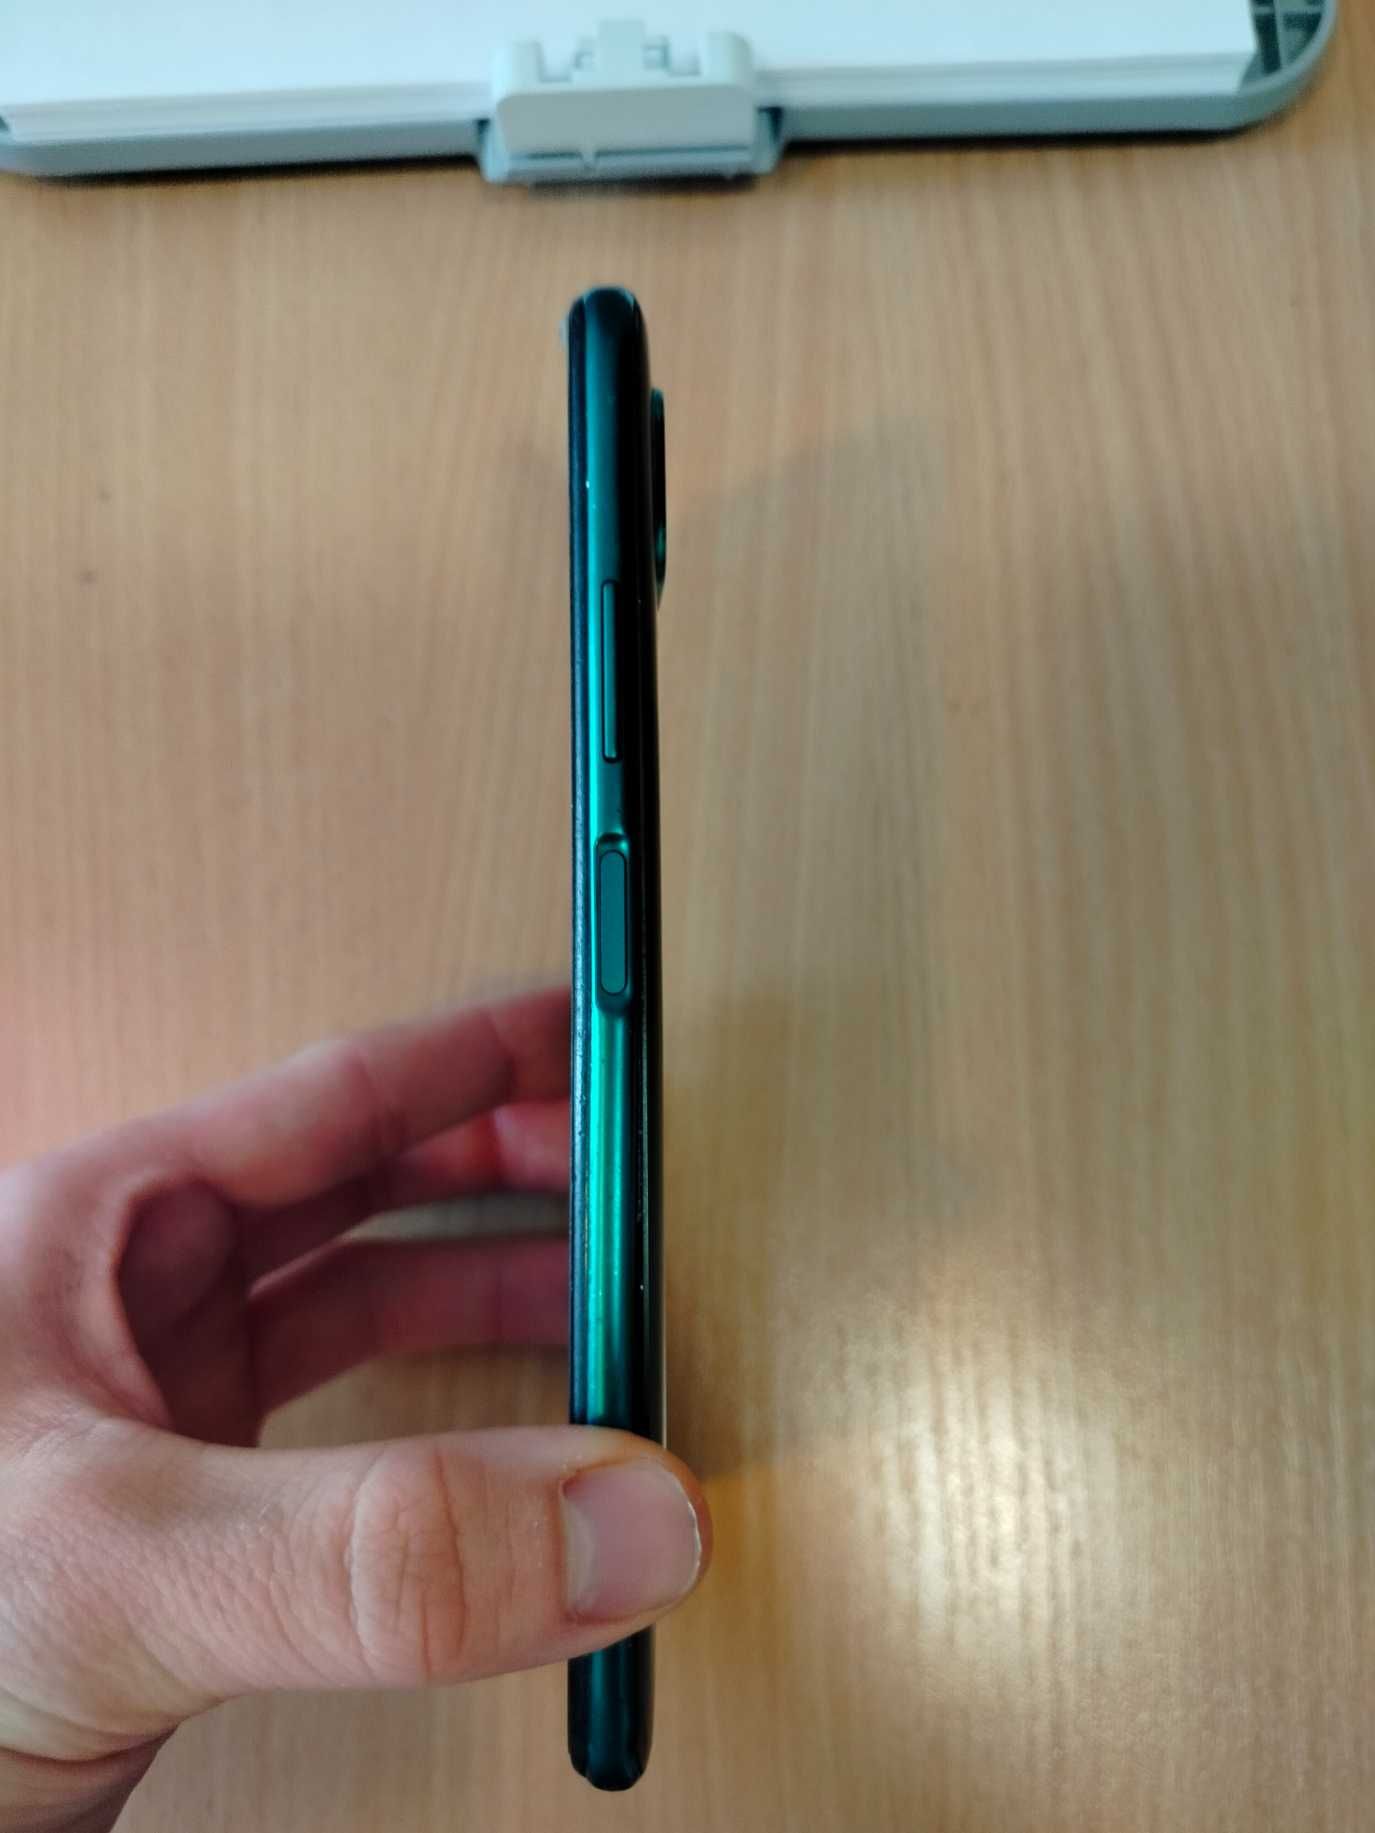 Telefon Huawei P40 lite - stan dobry, uszkodzony